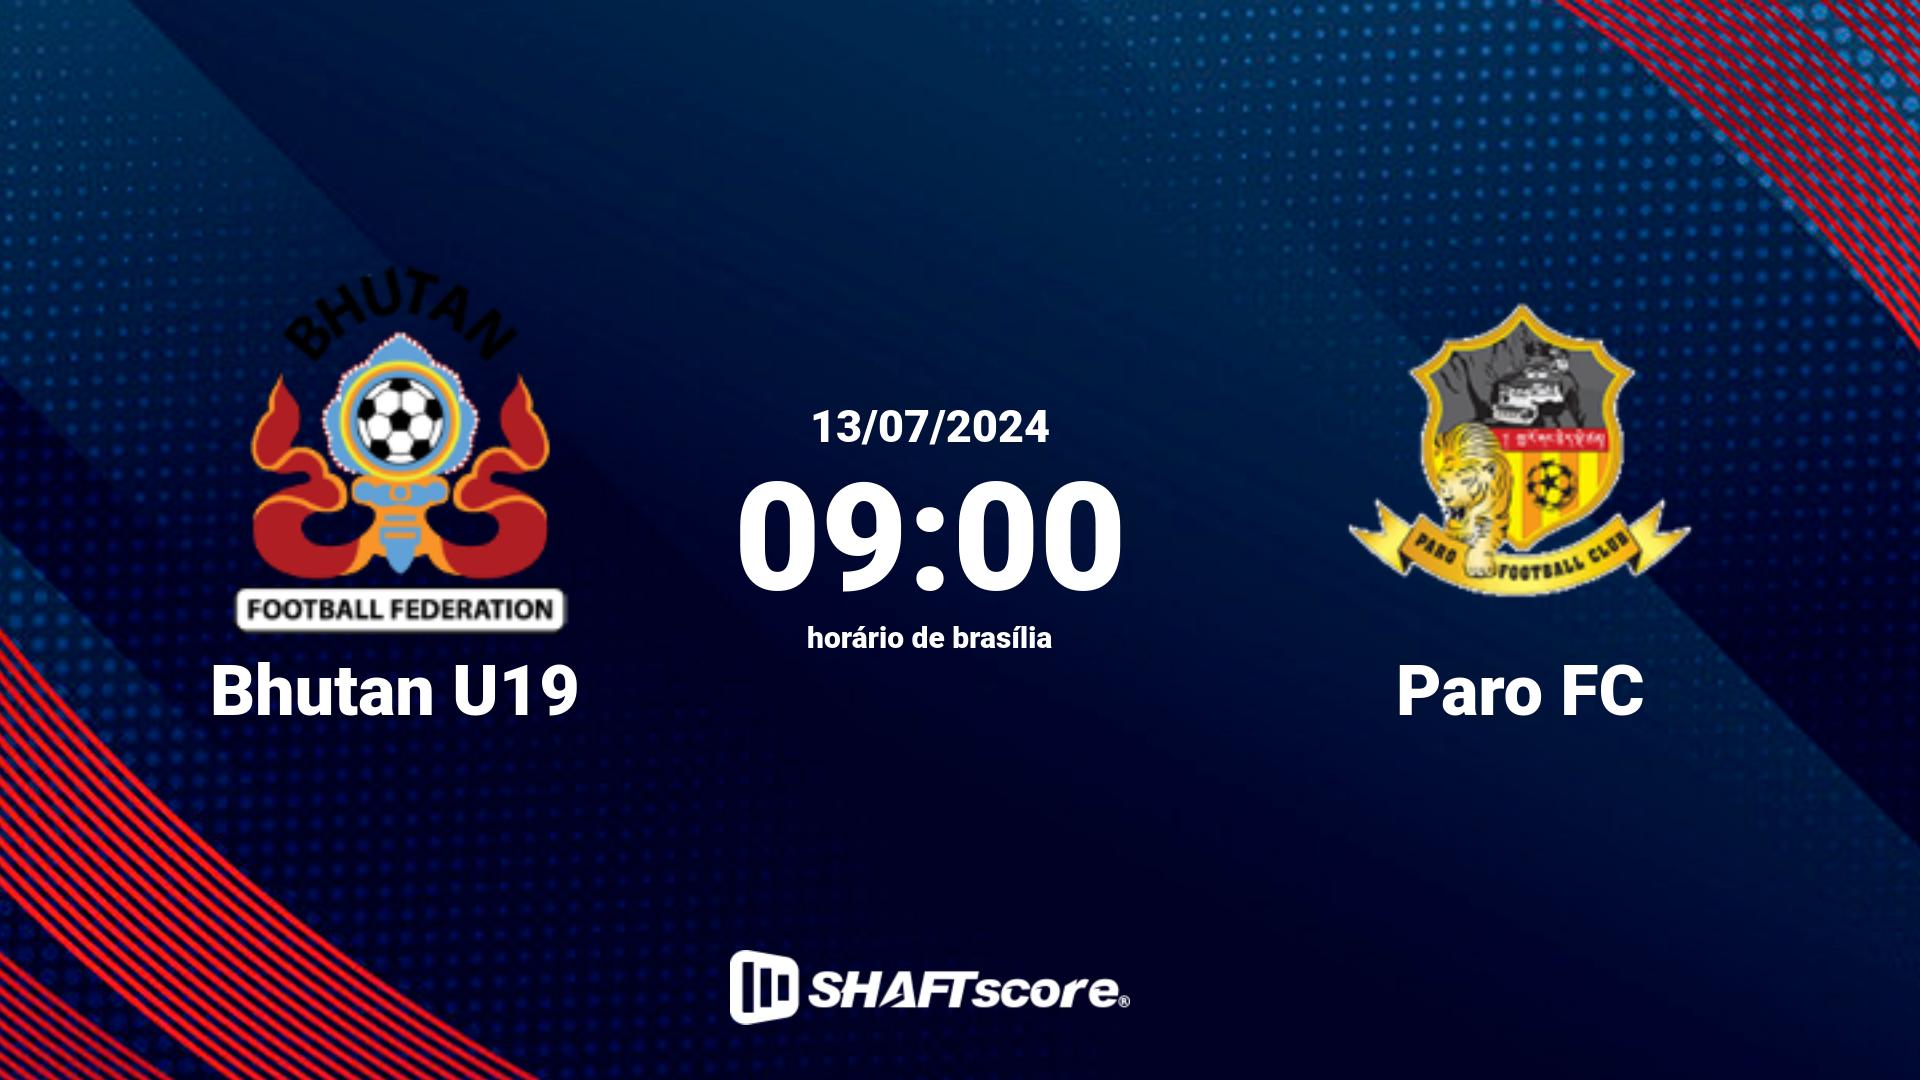 Estatísticas do jogo Bhutan U19 vs Paro FC 13.07 09:00